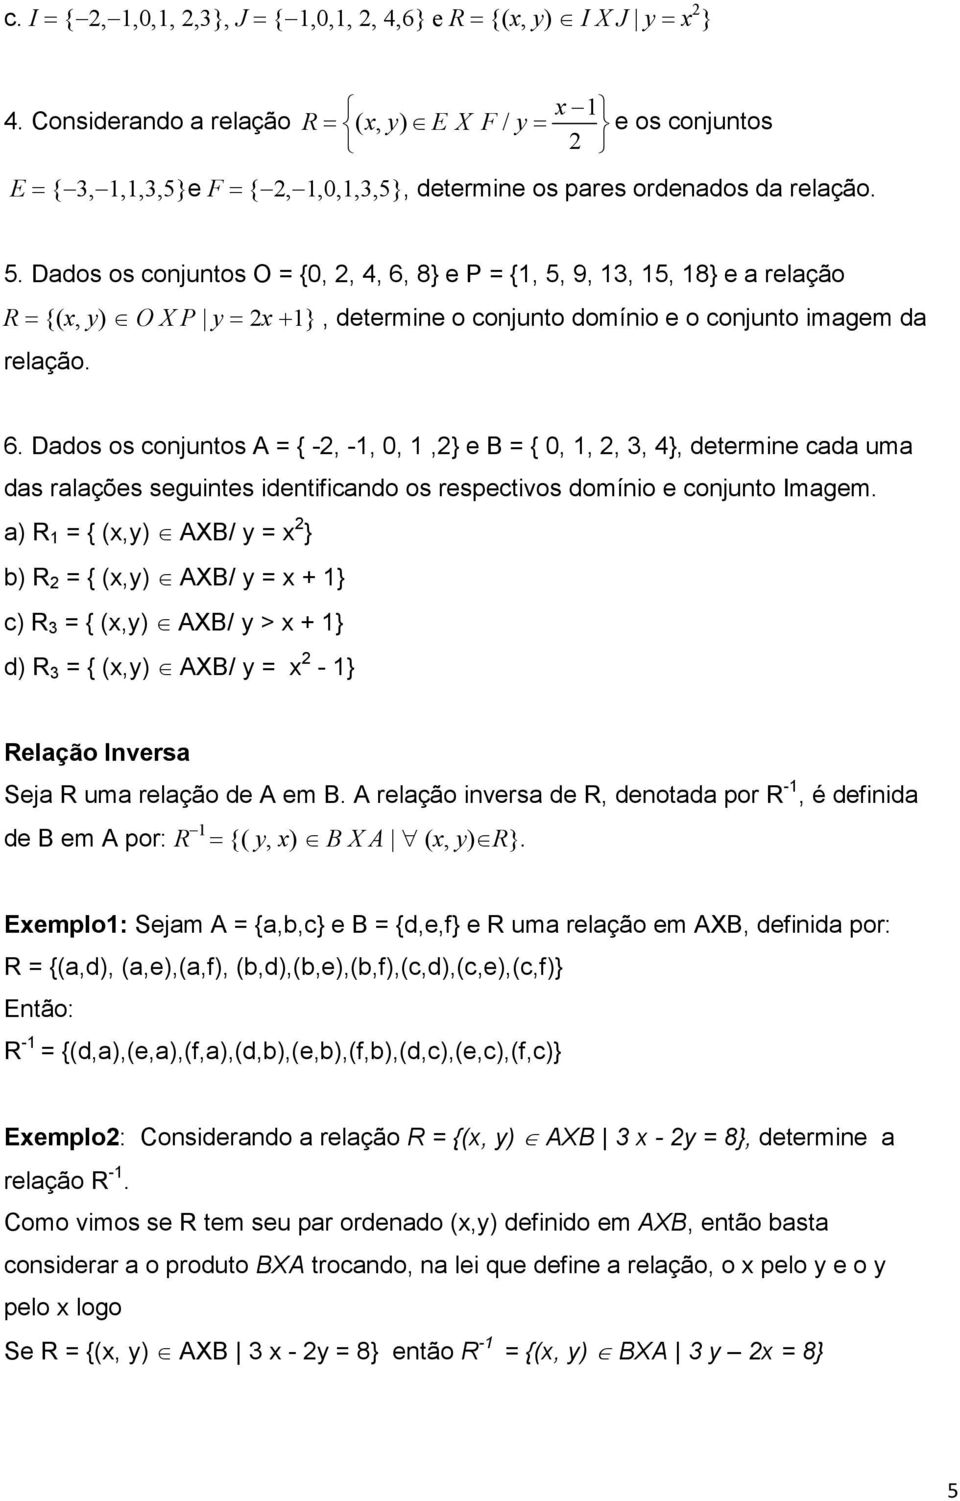 Ddos os onjuntos O = {0, 2, 4, 6, 8} e P = {1, 5, 9, 13, 15, 18} e relção R = {(x, y) O X P y = 2x +1}, determine o onjunto domínio e o onjunto imgem d relção. 6. Ddos os onjuntos = { -2, -1, 0, 1,2} e B = { 0, 1, 2, 3, 4}, determine d um ds rlções seguintes identifindo os respetivos domínio e onjunto Imgem.